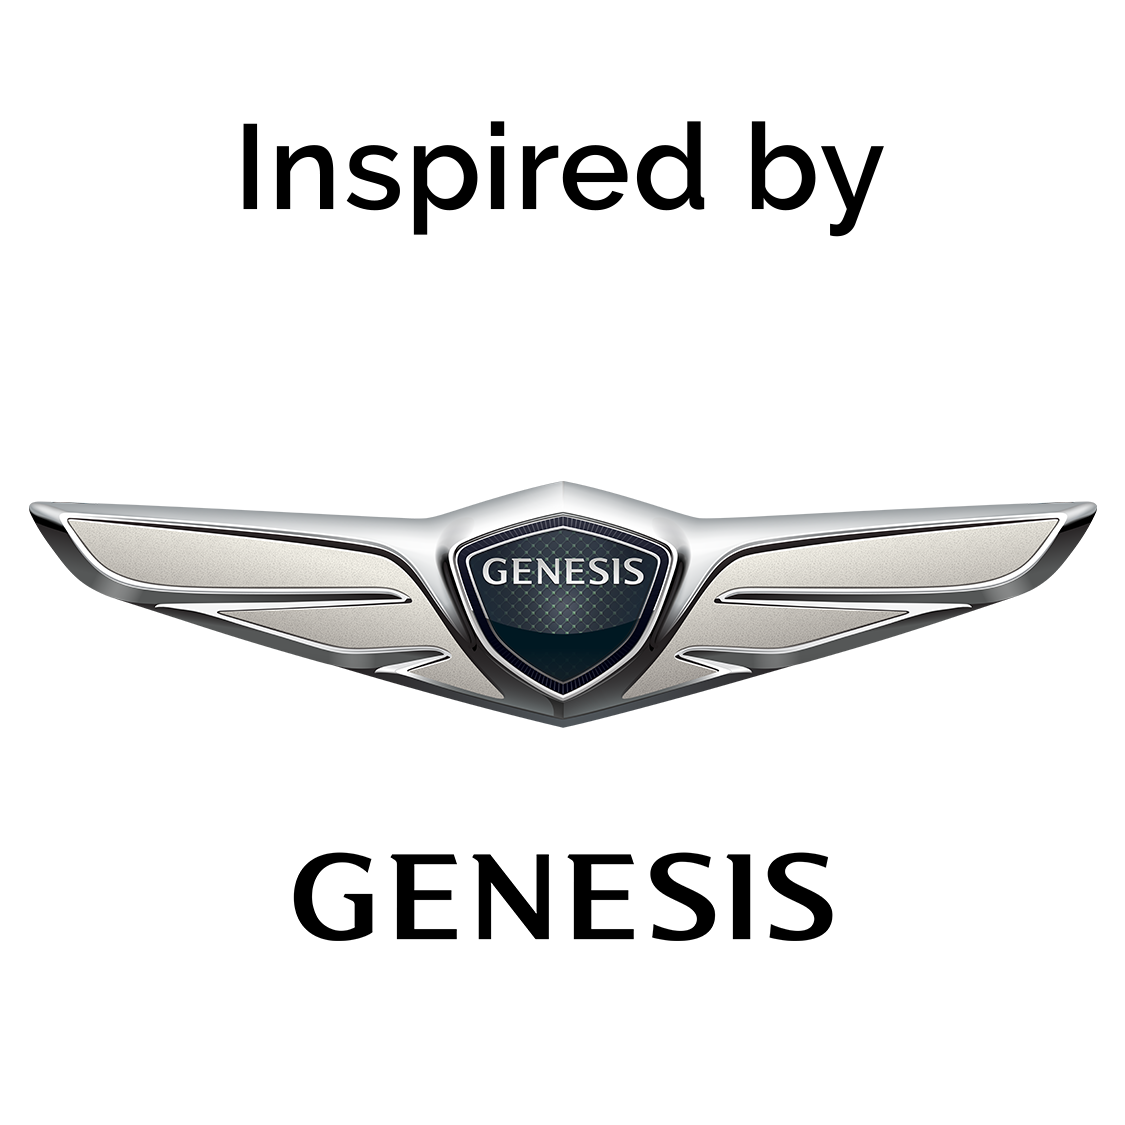 Genesis Motors